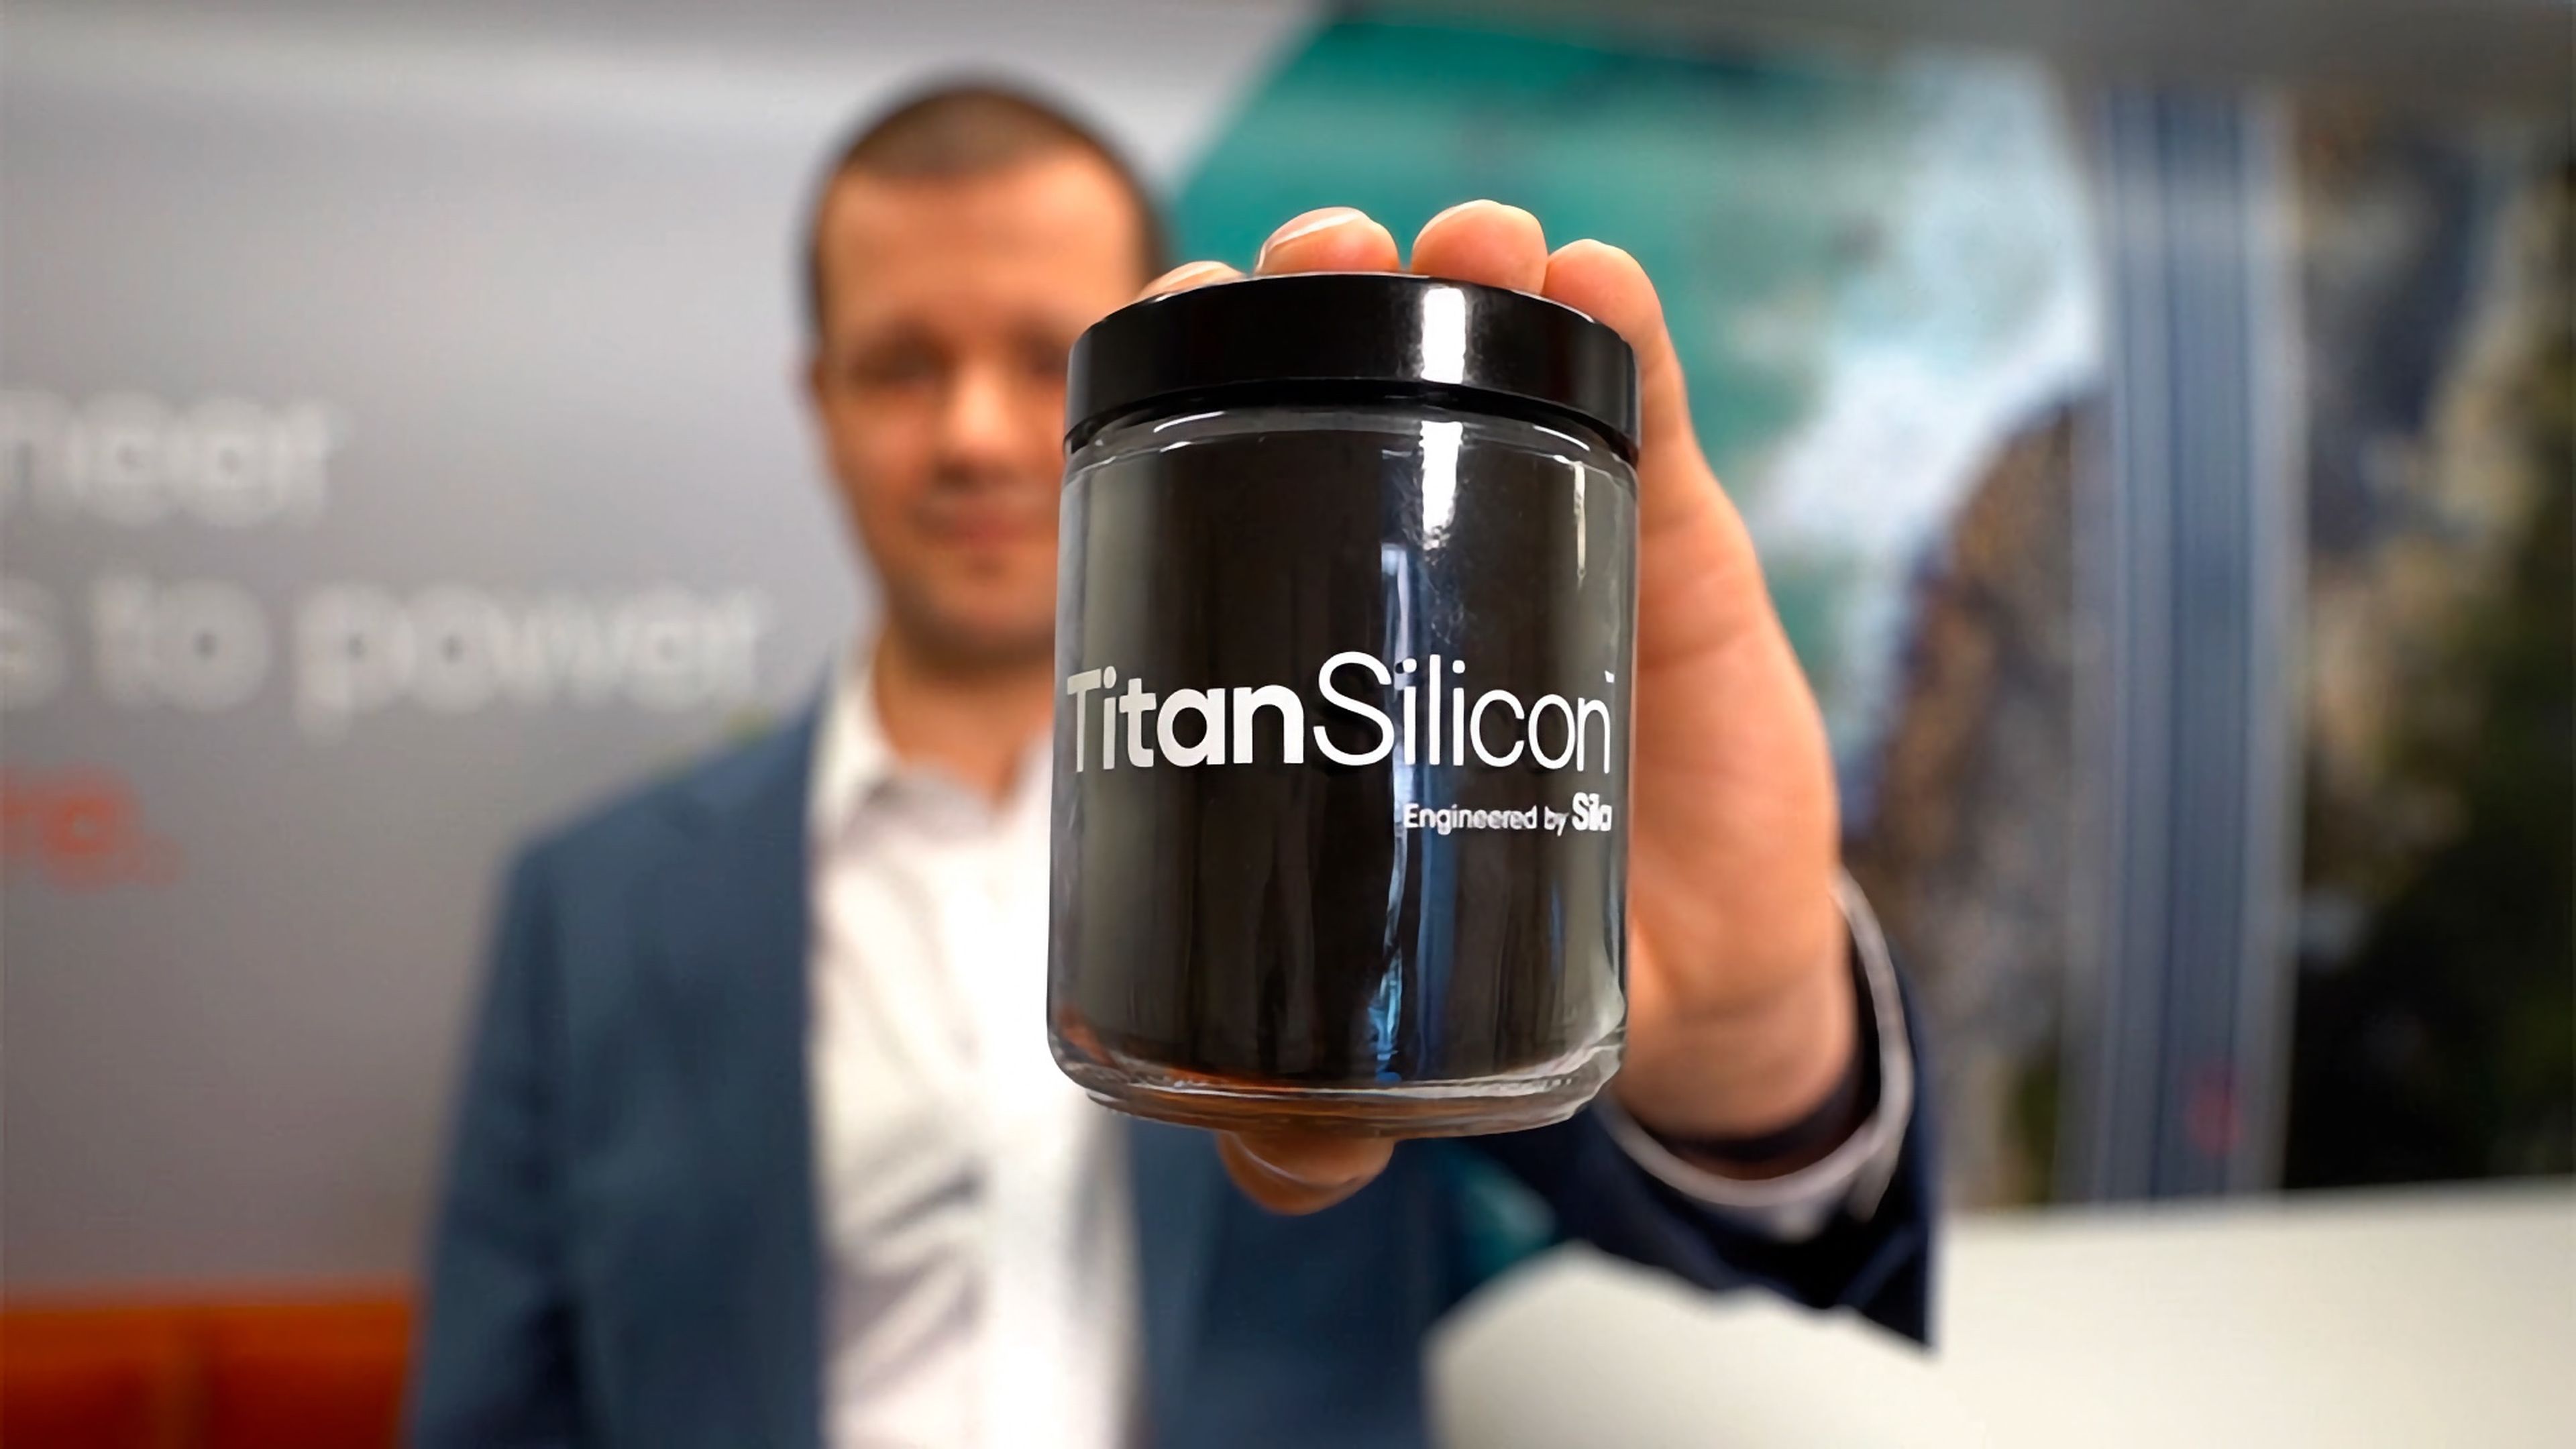 Titan Silicon